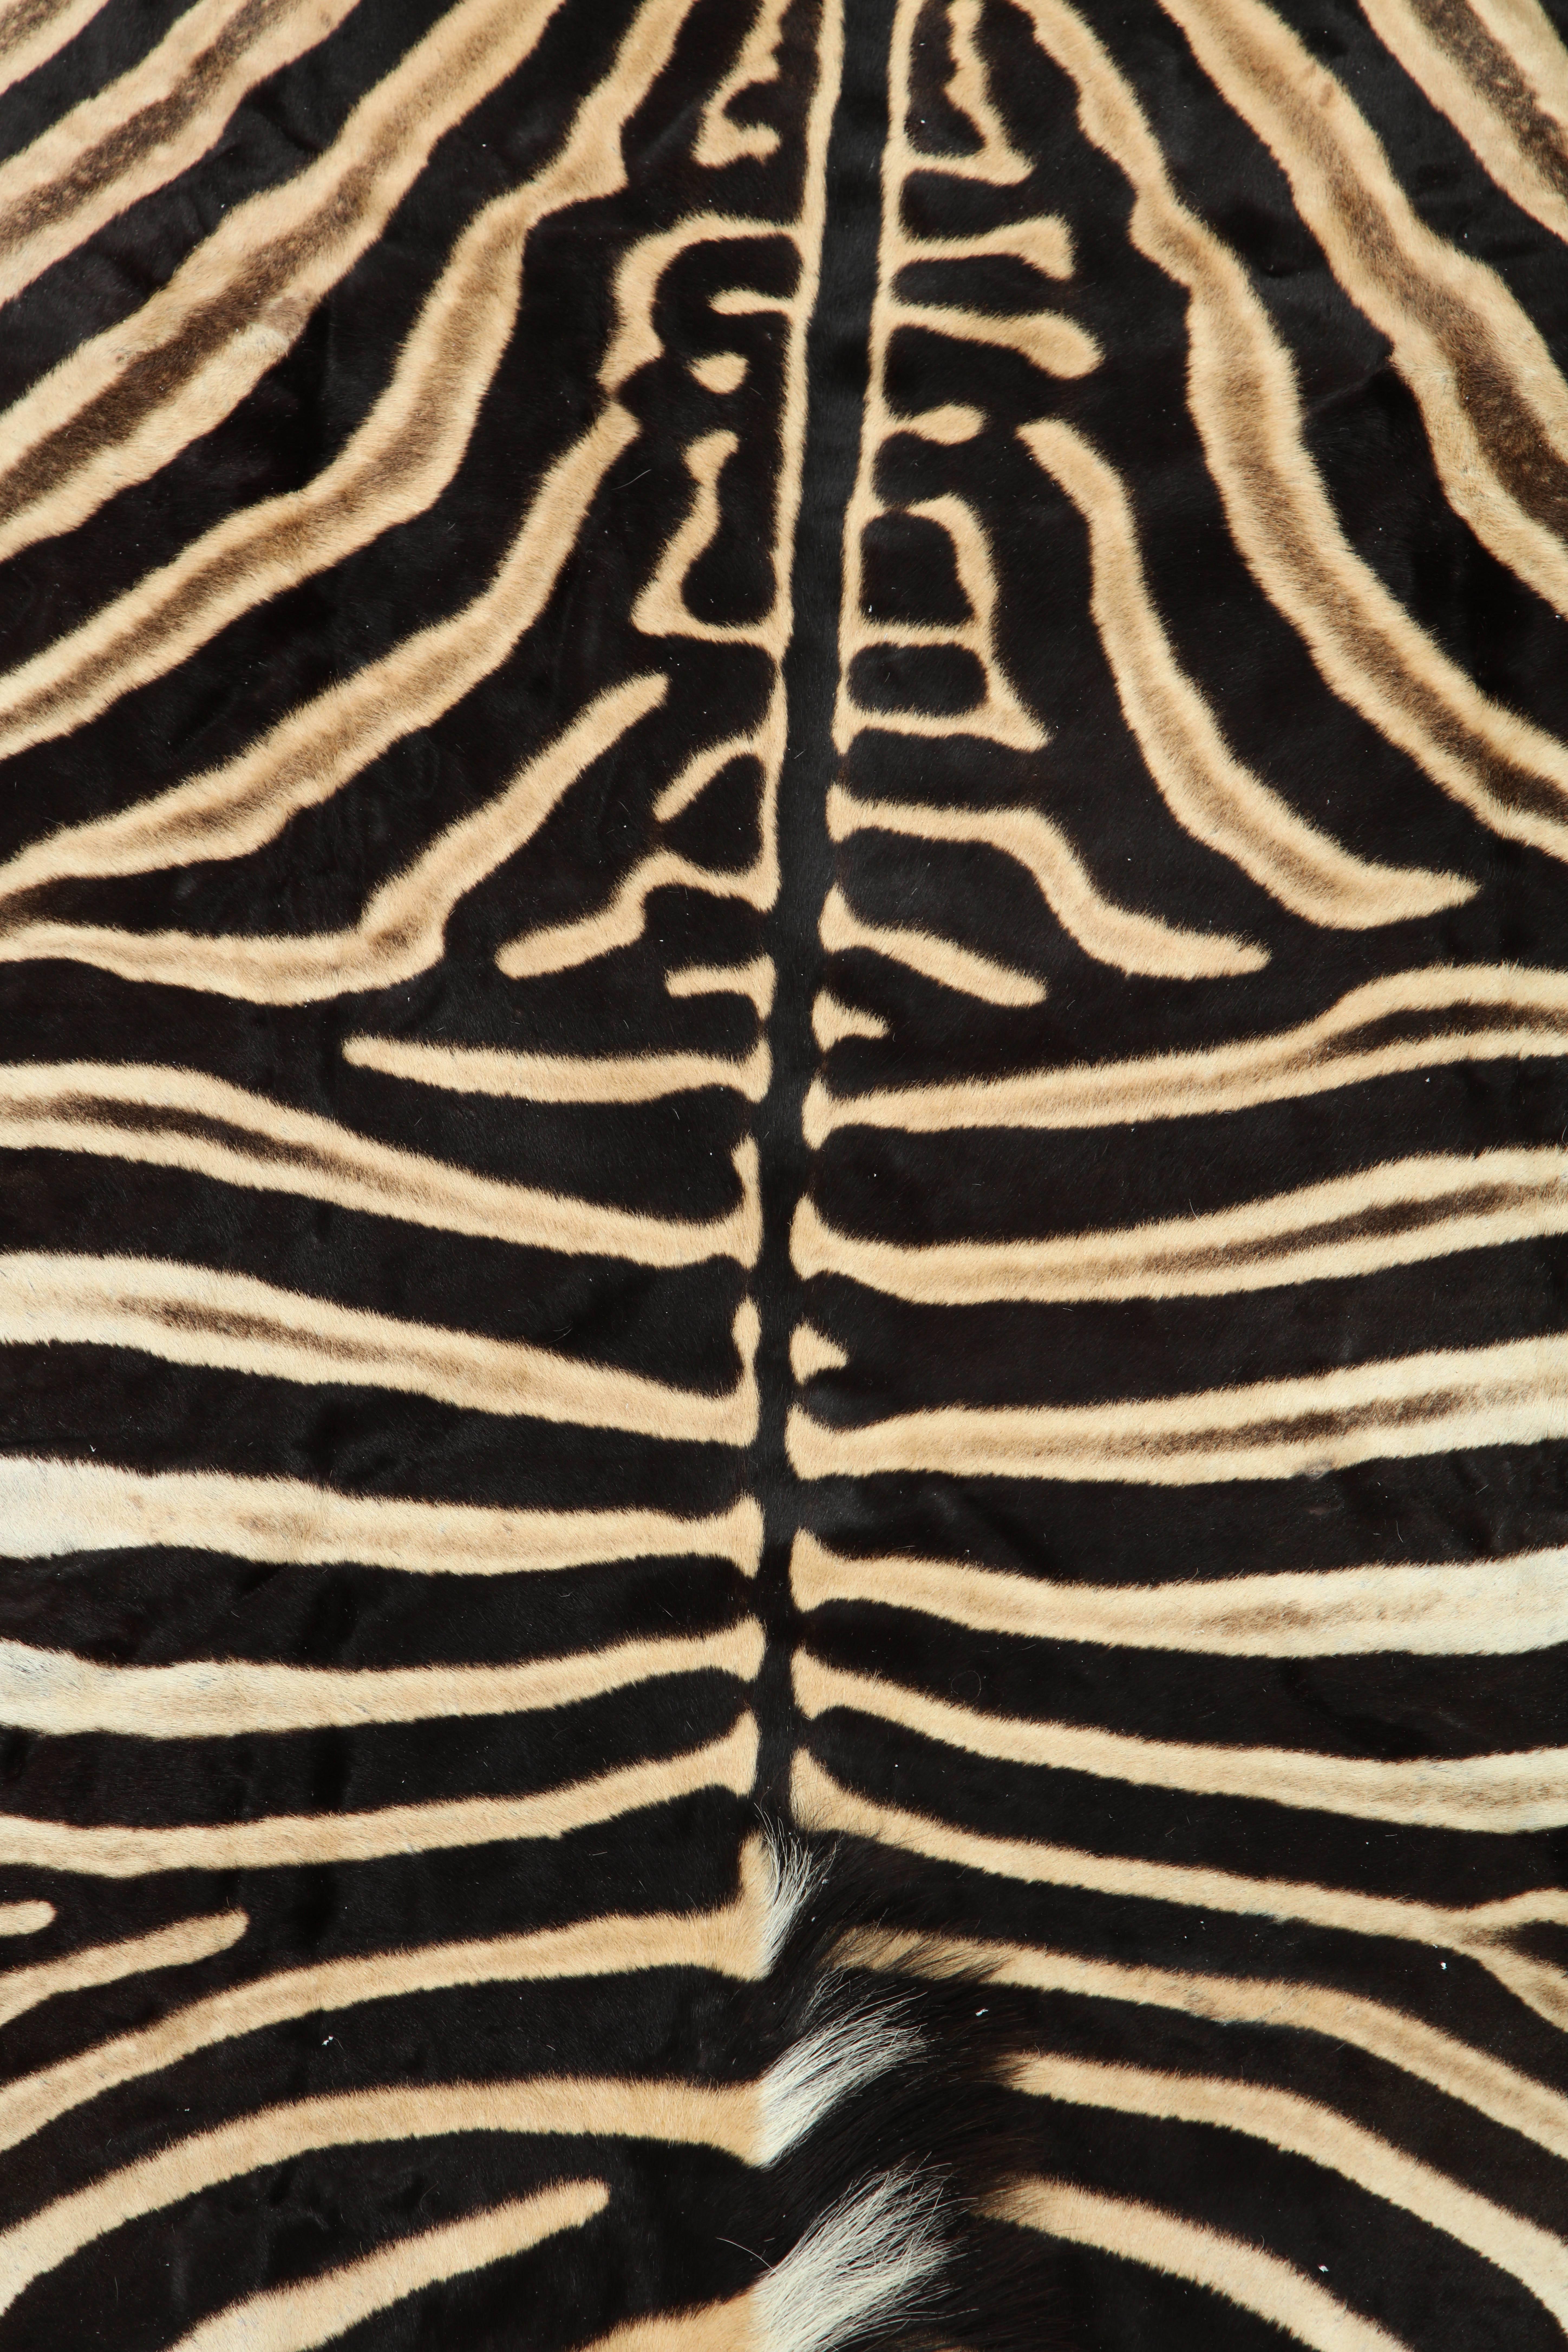 South African Zebra Hide Rug, Vintage